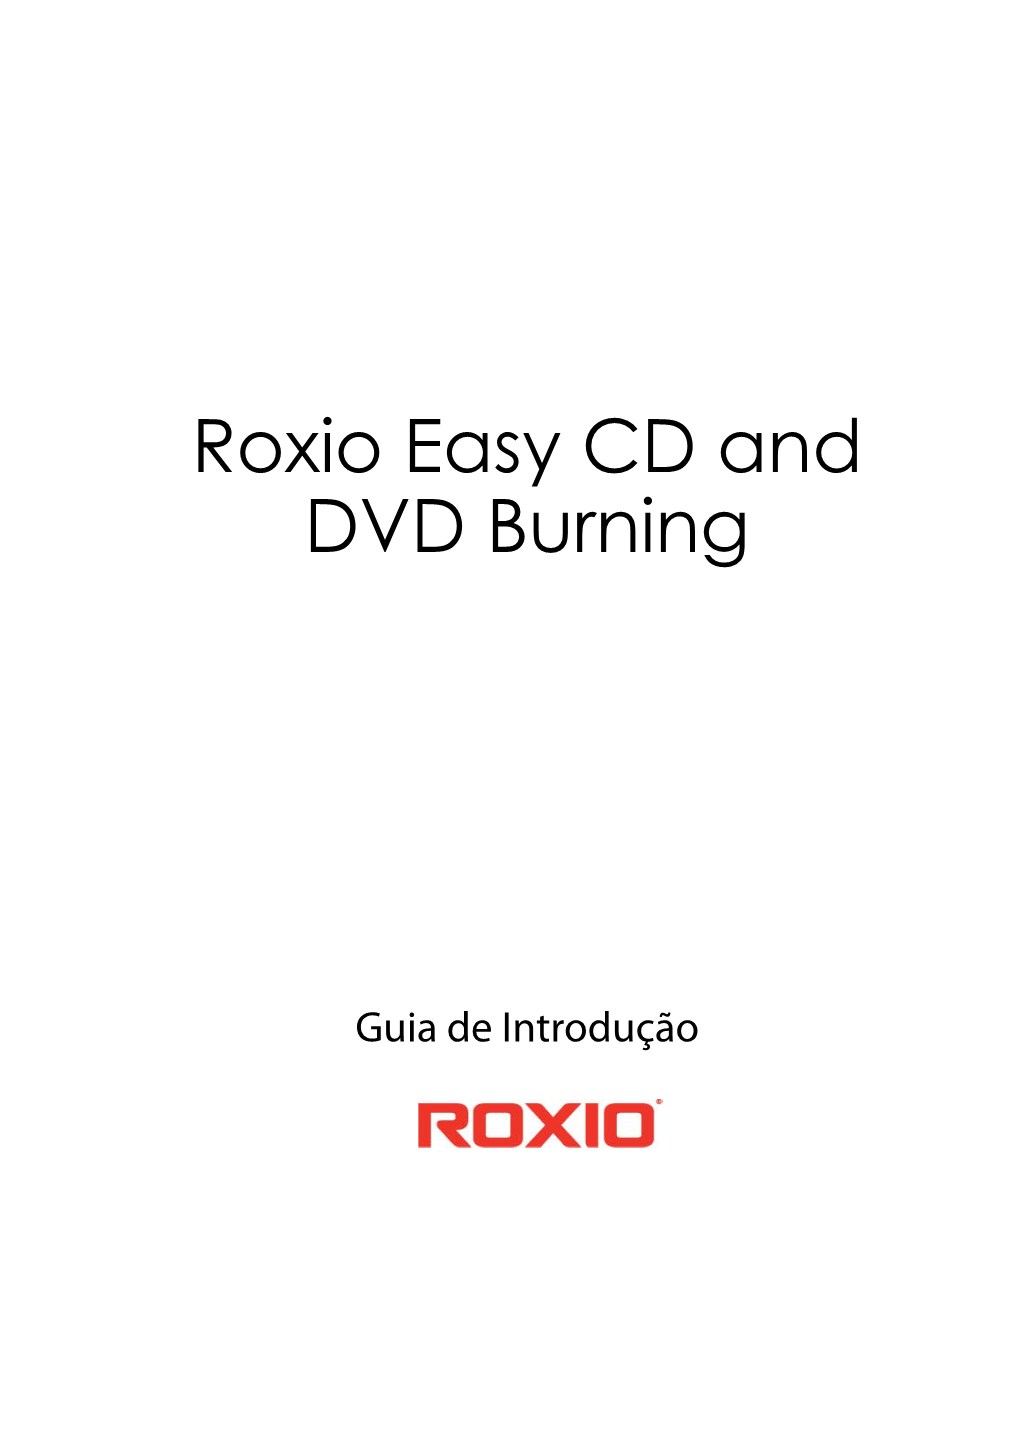 Guia De Introdução Ao Roxio Easy CD and DVD Burning 5 Easy CD and DVD Burning.Book Page 6 Wednesday, November 28, 2012 2:31 PM